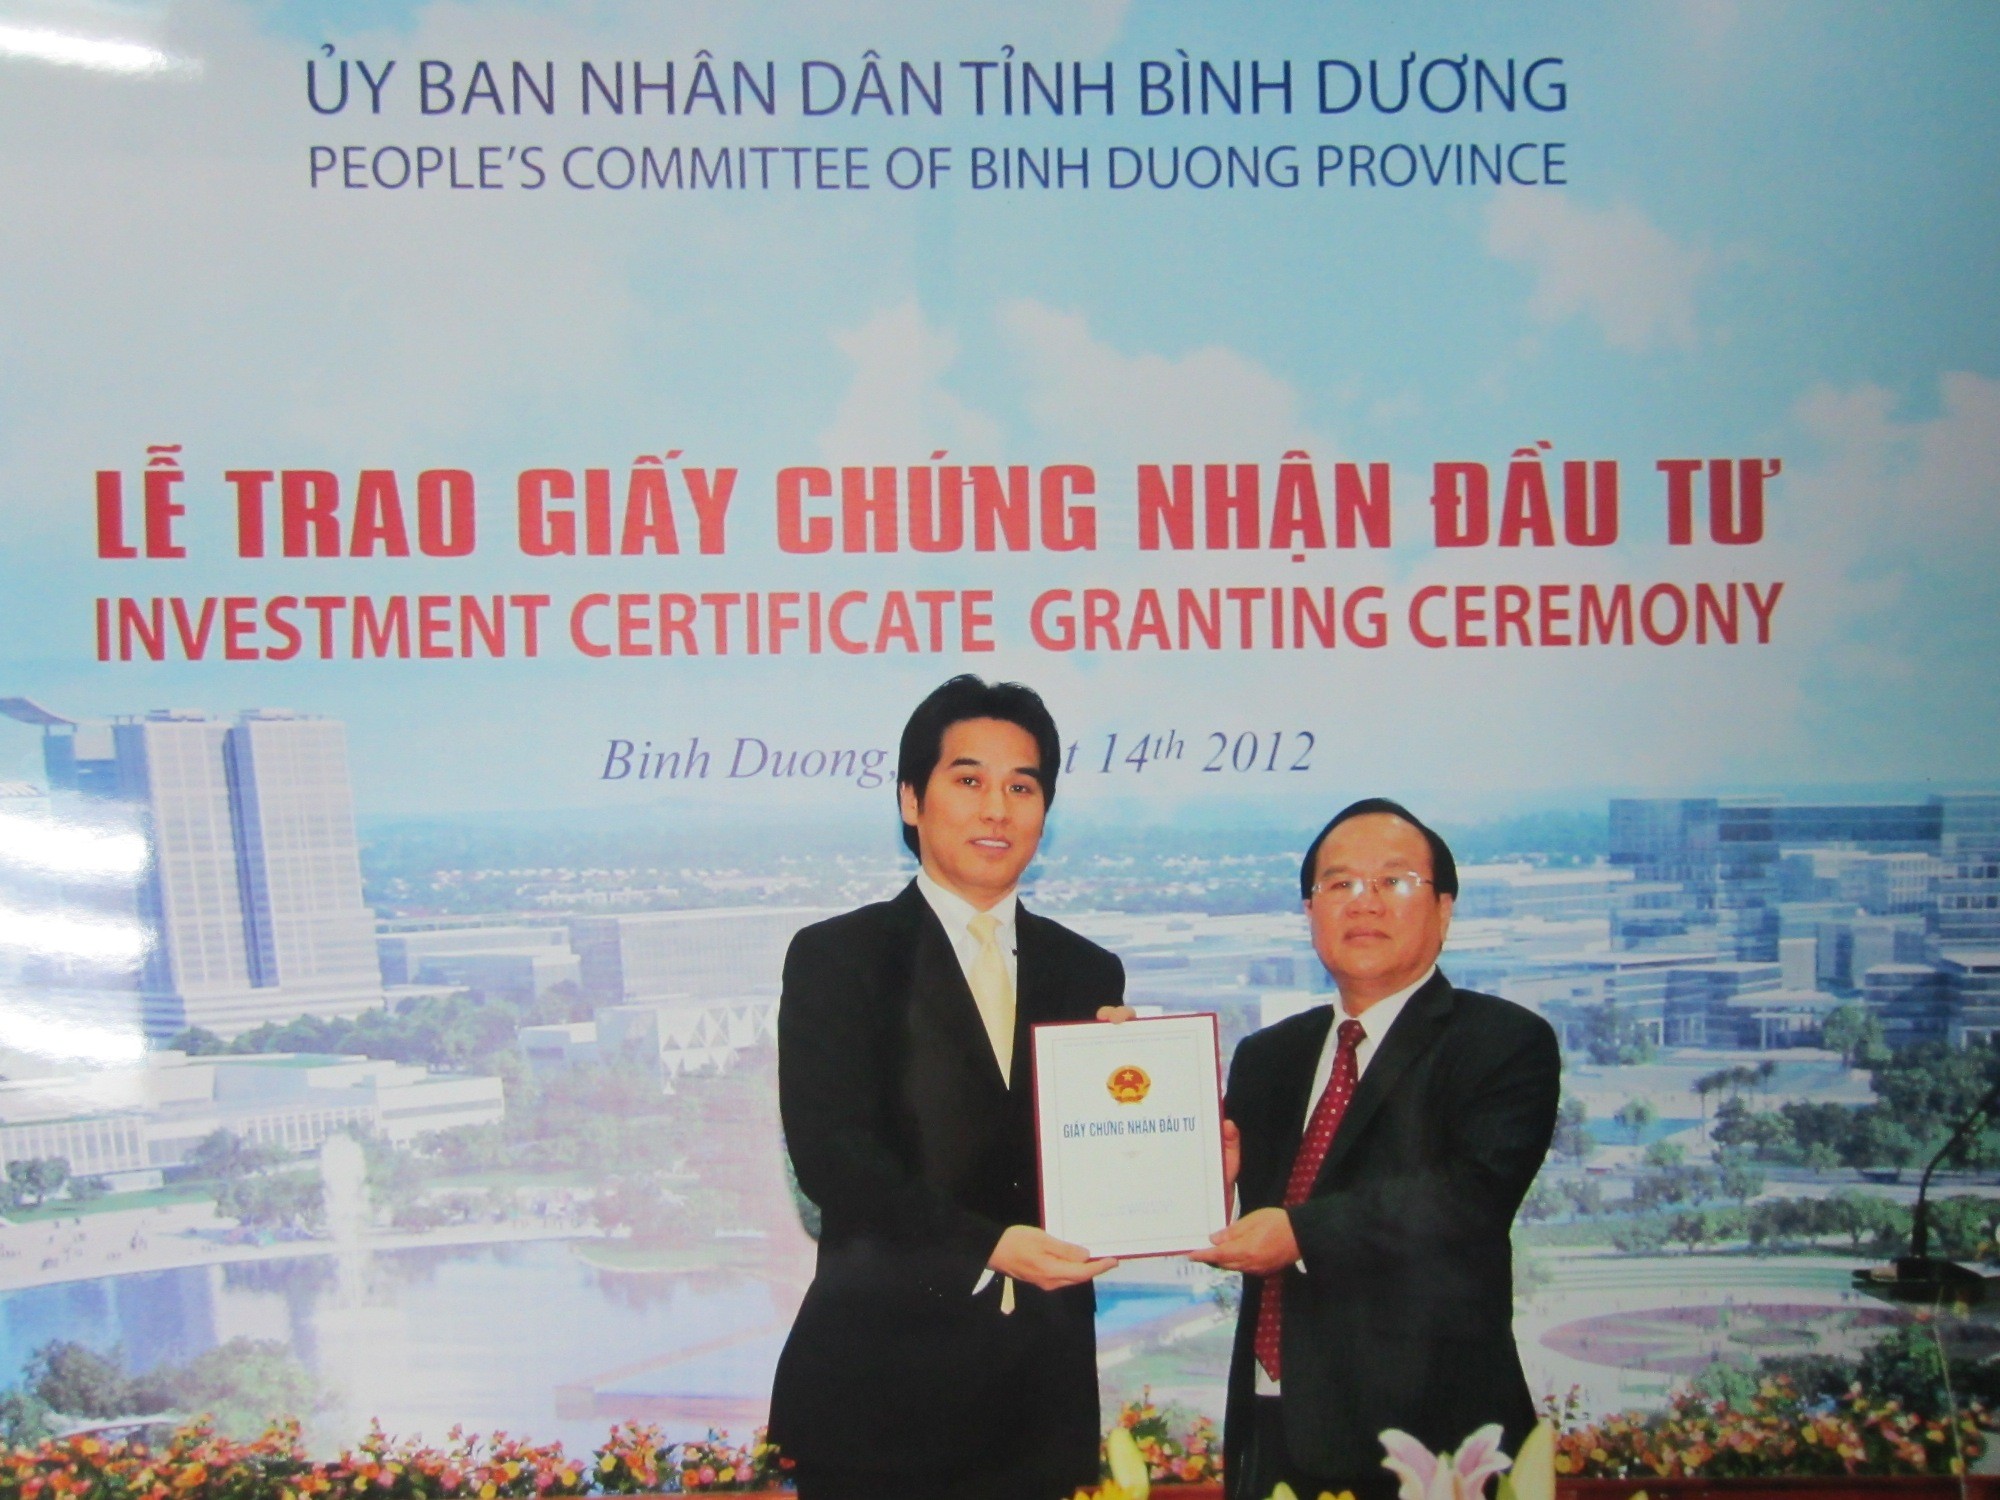 Công ty TNHH Ắc Quy GS Viet Nam vinh dự được UBND tỉnh Bình Dương trao nhận giấy phép đầu tư đối với việc tăng vốn đầu tư mở rộng sản xuất.